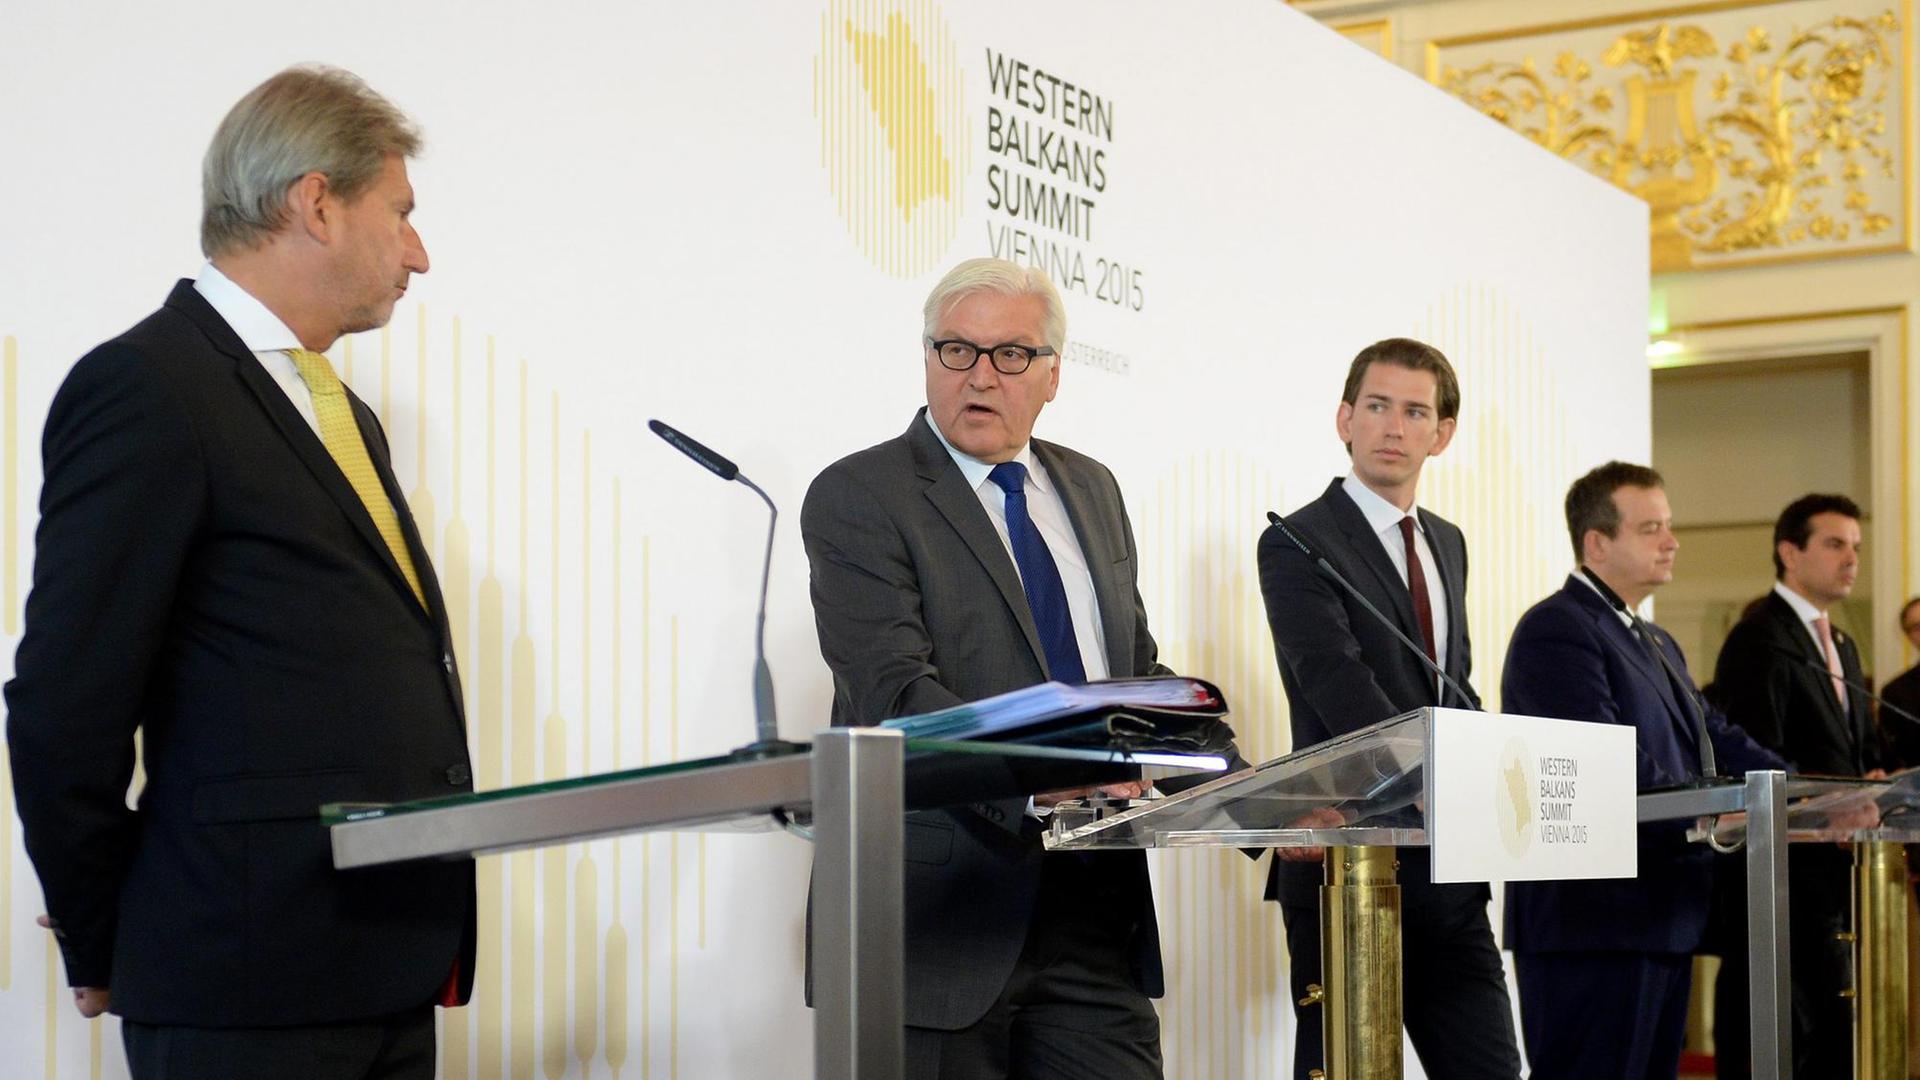 EU-Kommissar Johannes Hahn (von links), Bundesaußenminister Frank-Walter Steinmeier und Österreichs Außenminister Sebastian Kurz bei einer Pressekonferenz zum Auftakt der Westbalkan-Konferenz in Wien